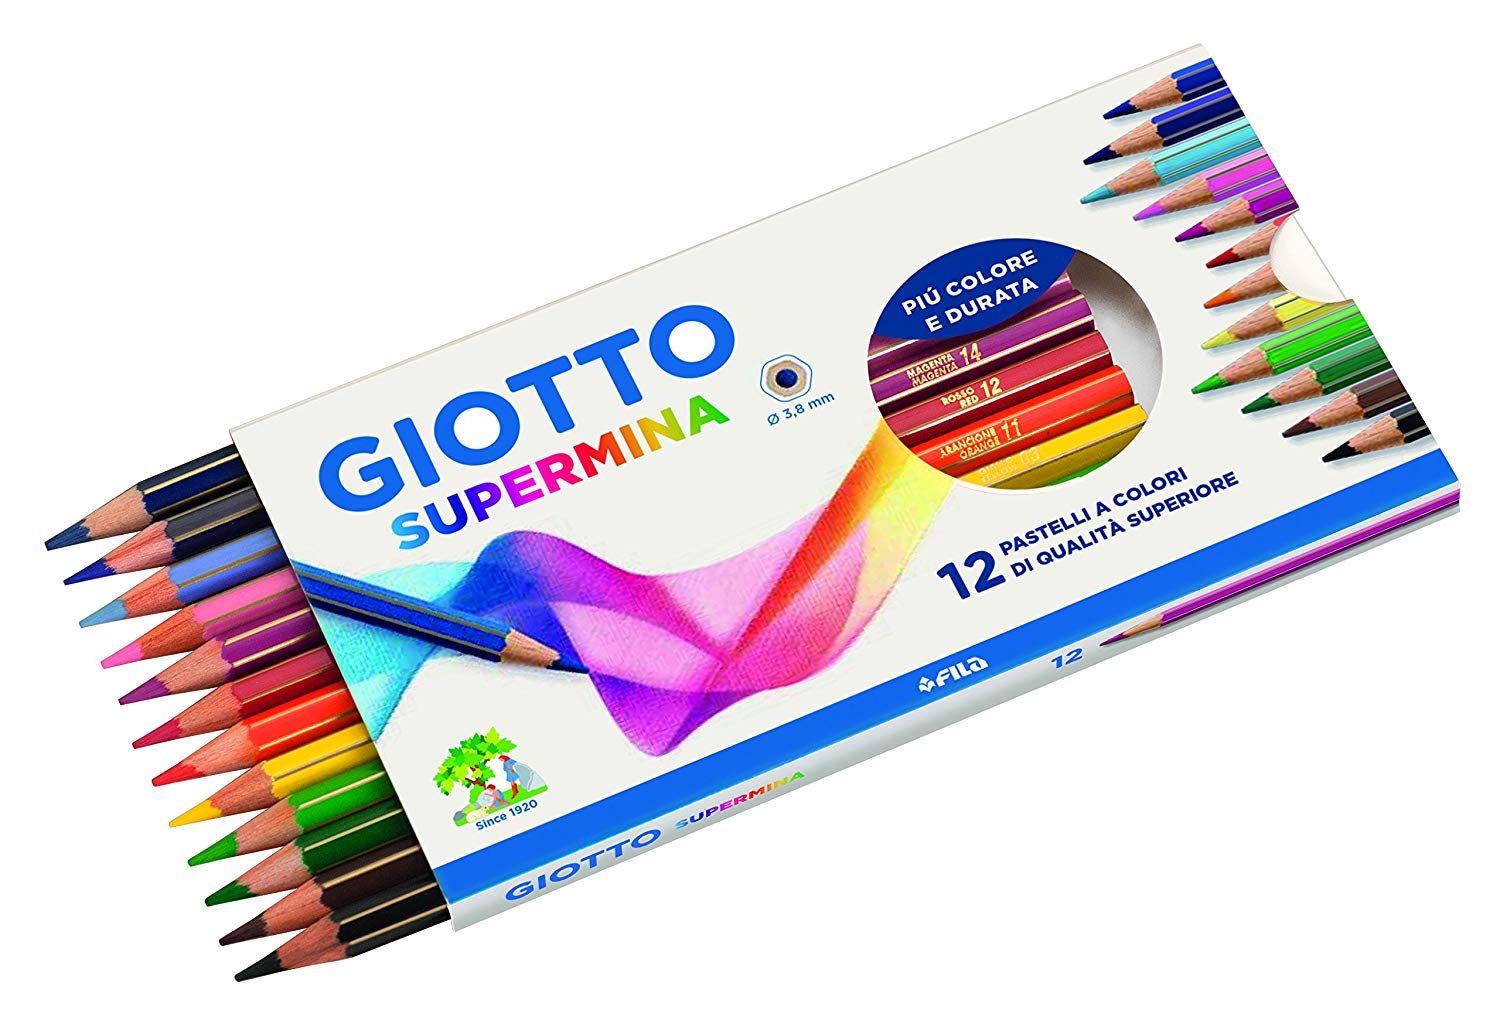 Giotto Supermina 36 matite colorate (235900) a € 17,80 (oggi)